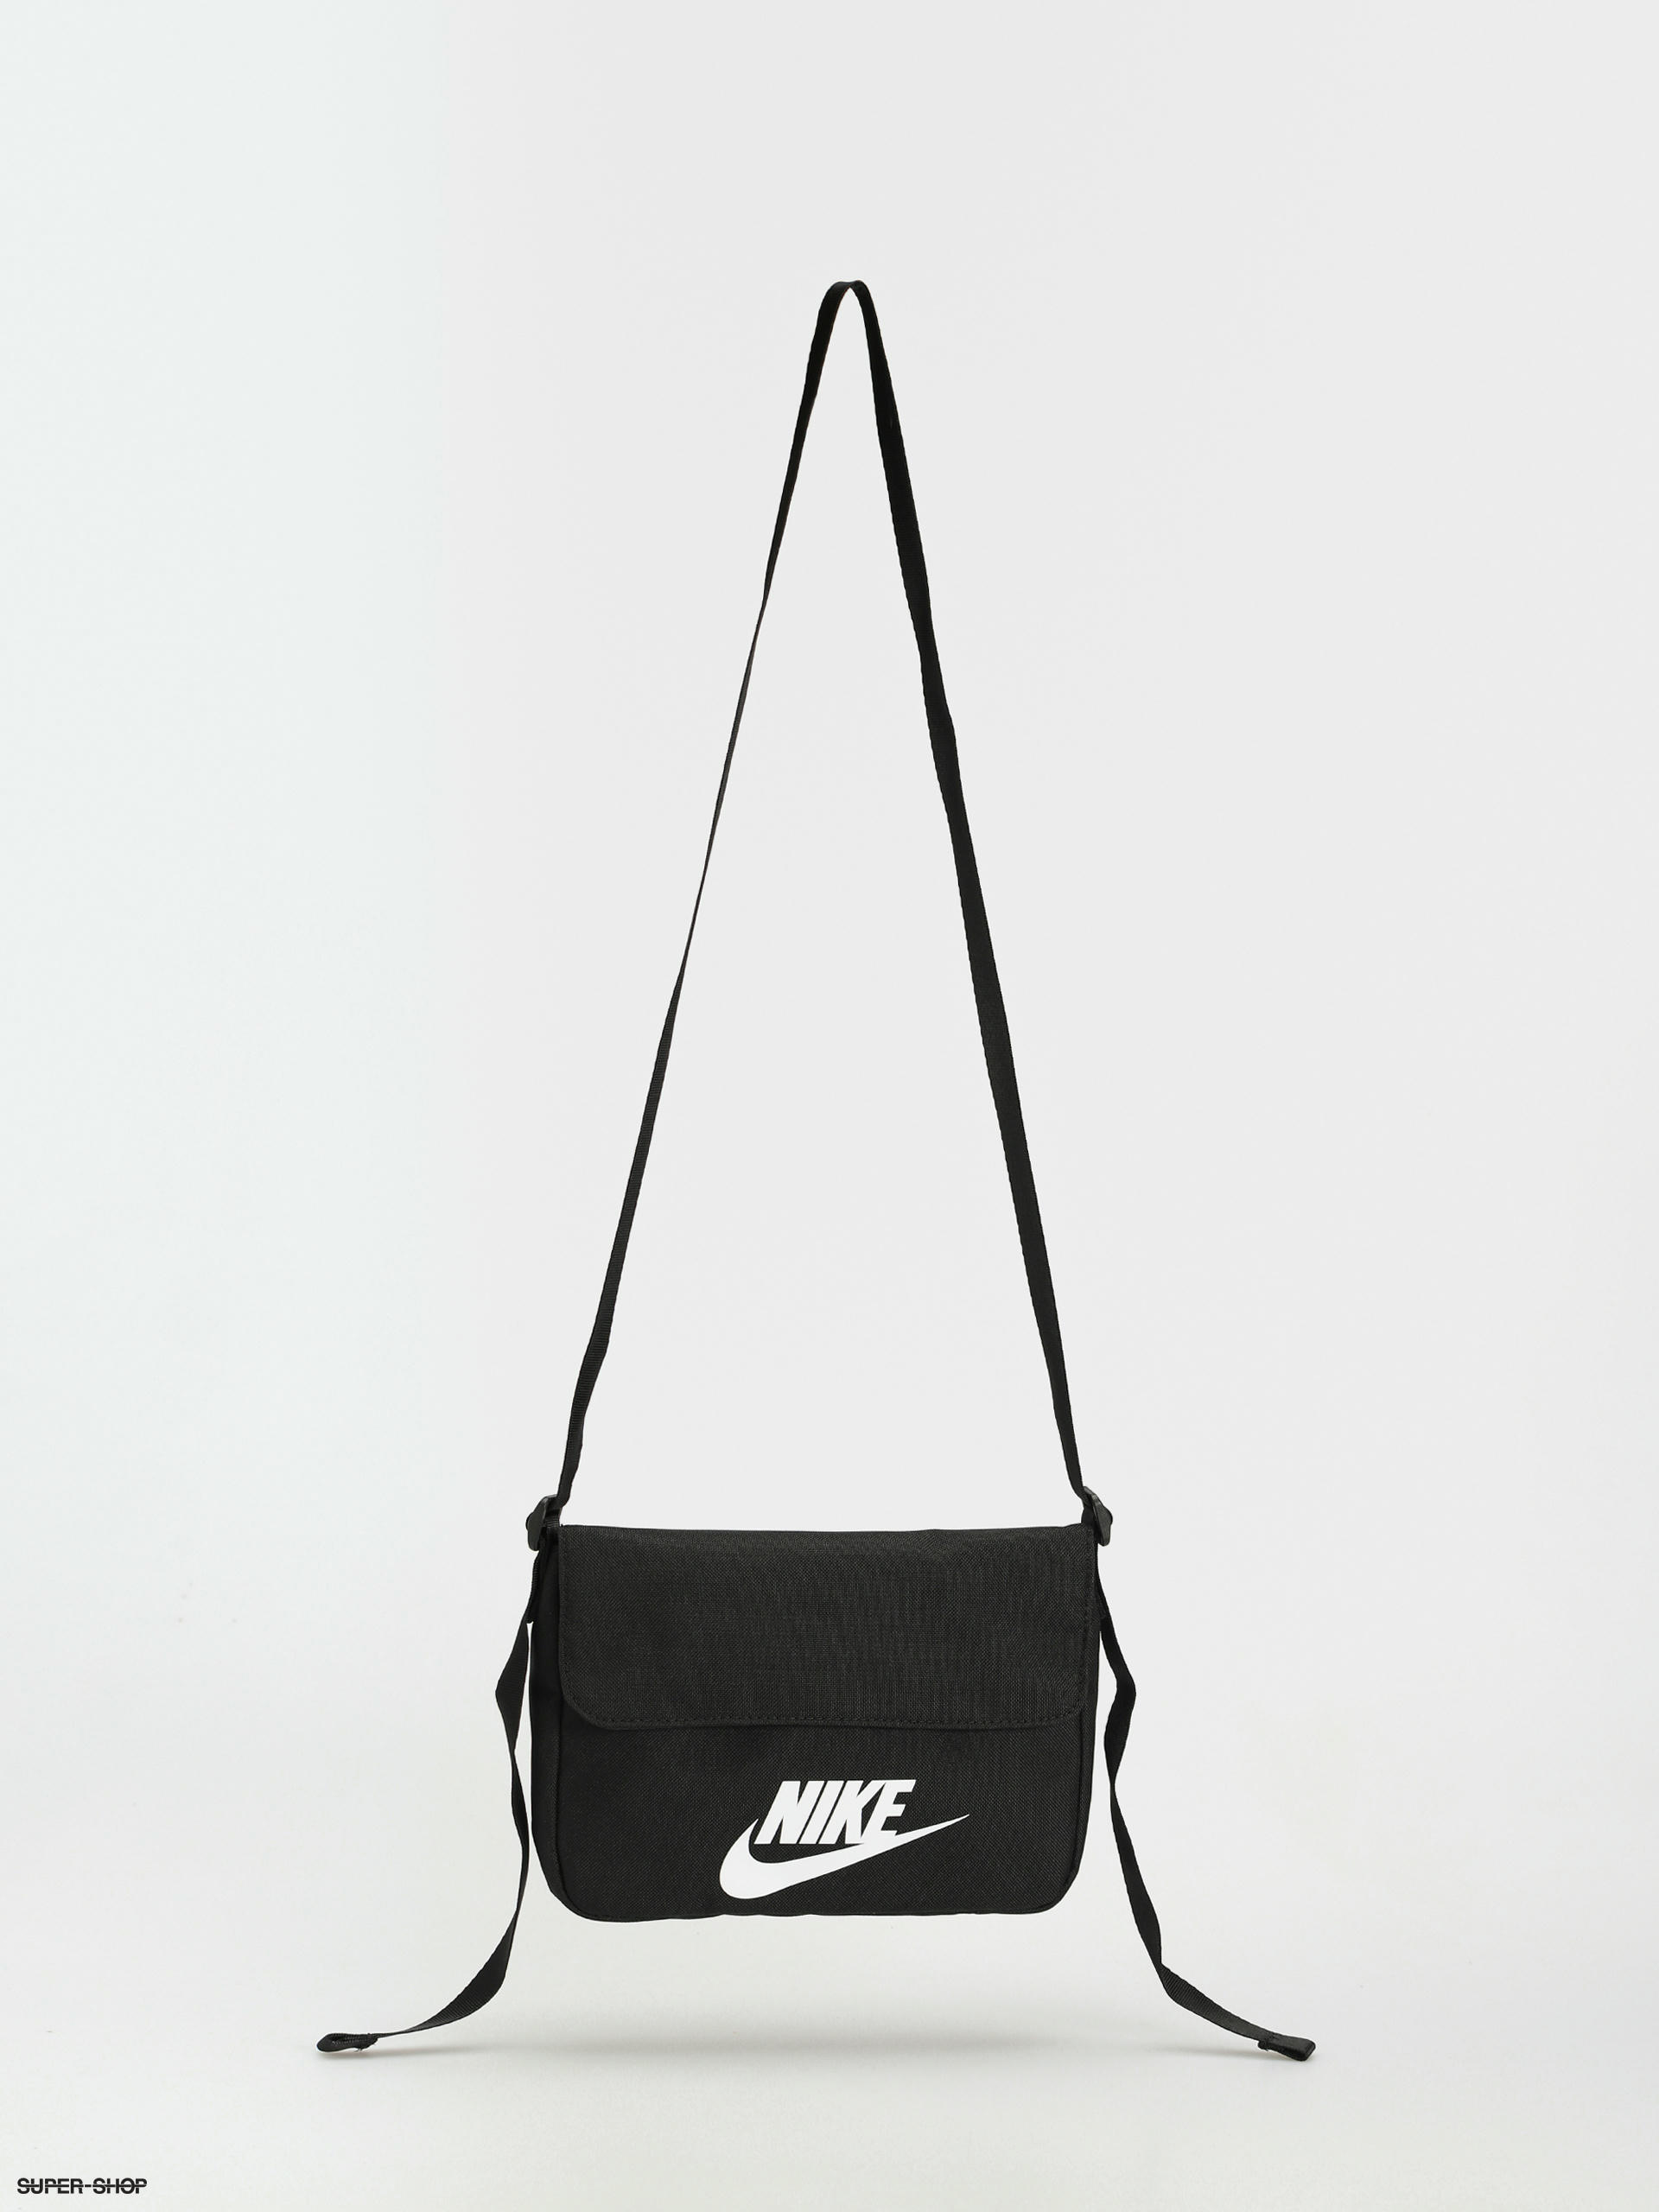 Nike SB RPM Backpack Honeydew Size 26L Bag Gym Training School BA5971-343 |  eBay